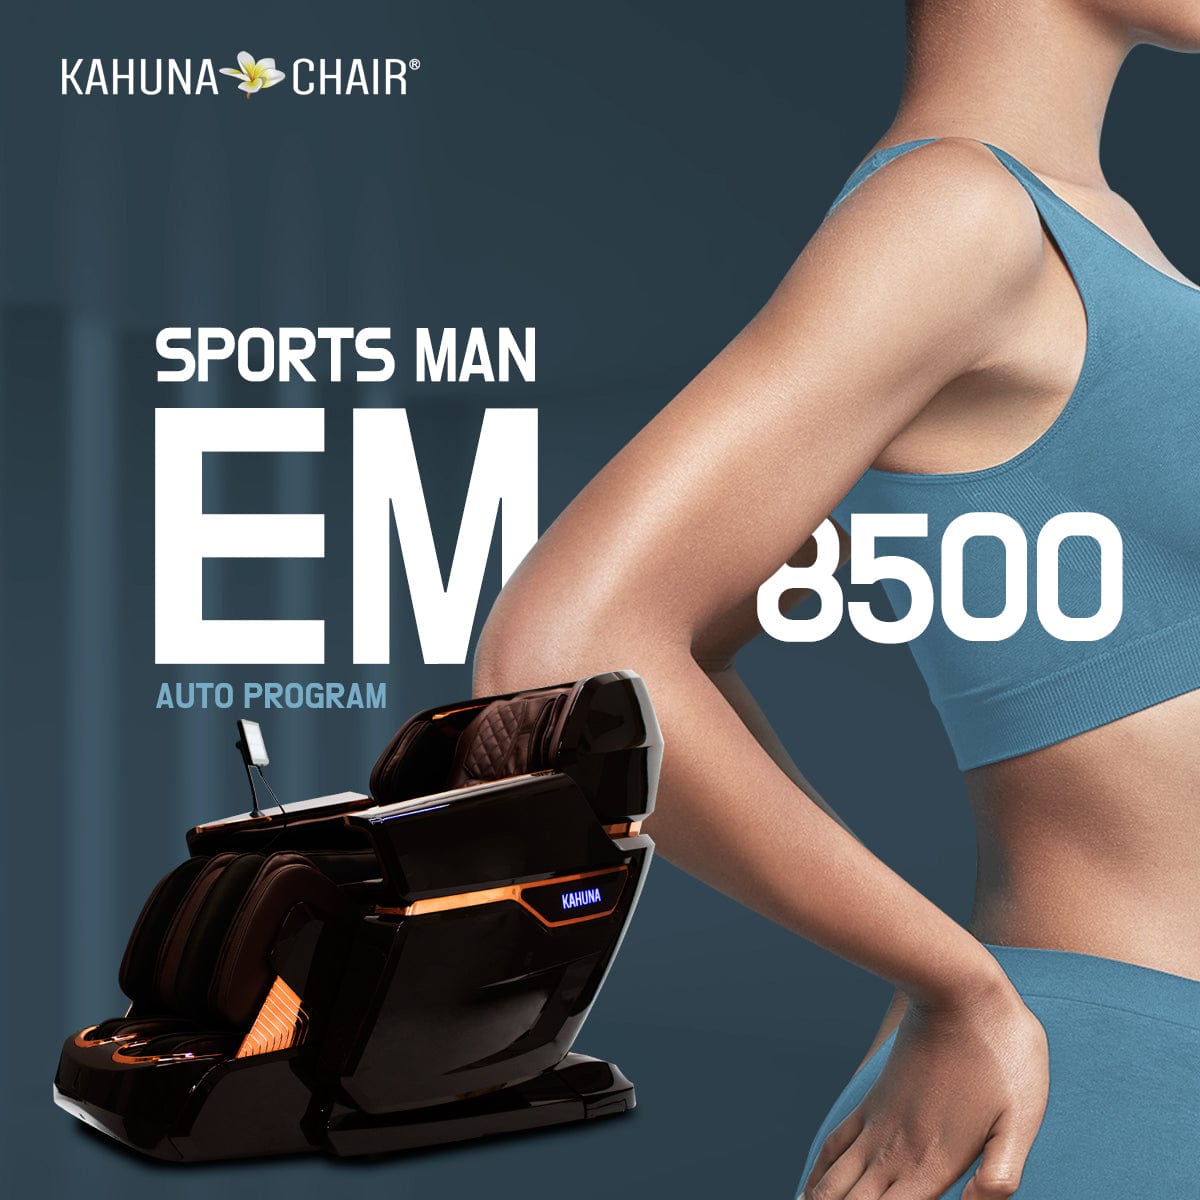 Kahuna Chair – EM 8500 [Blue/Grey] - Massage Chair